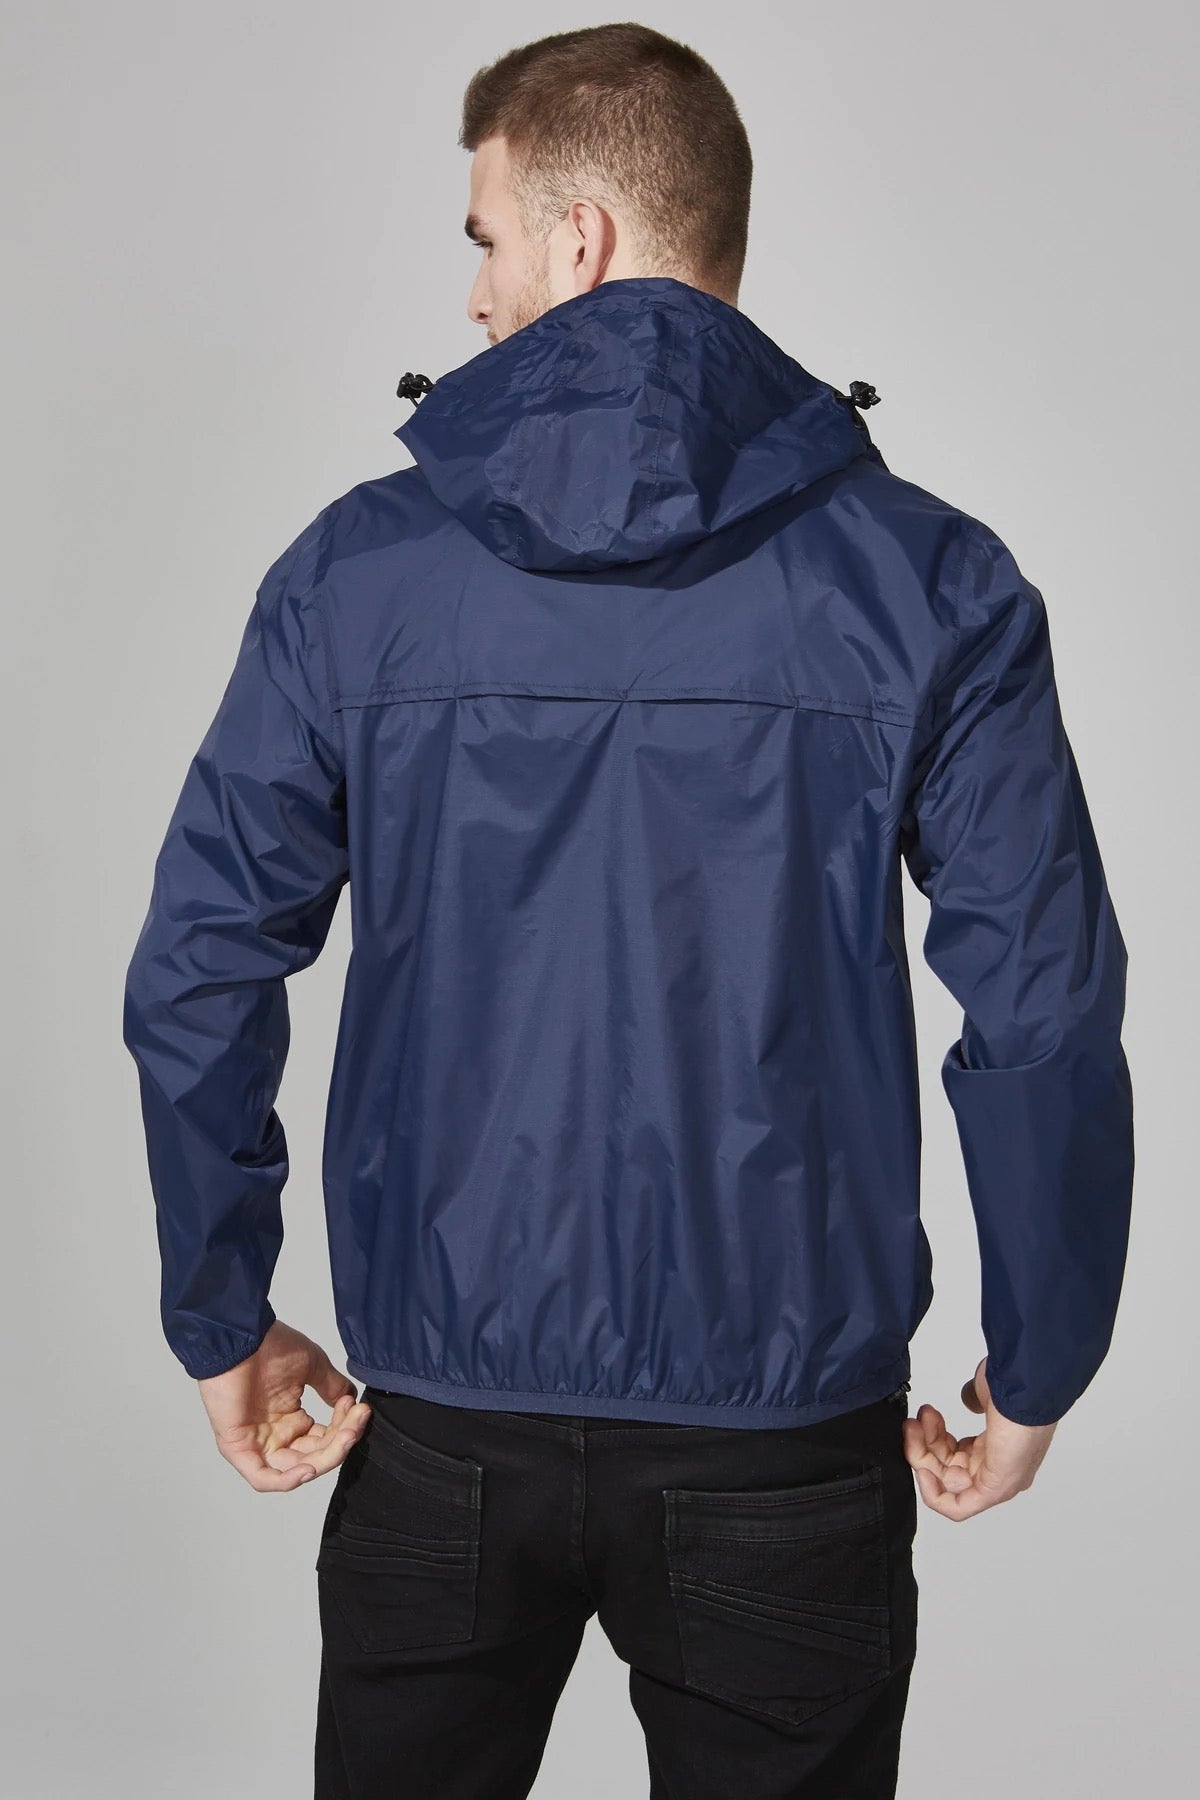 Men's navy quarter zip packable rain jacket and windbreaker - O8Lifestyle